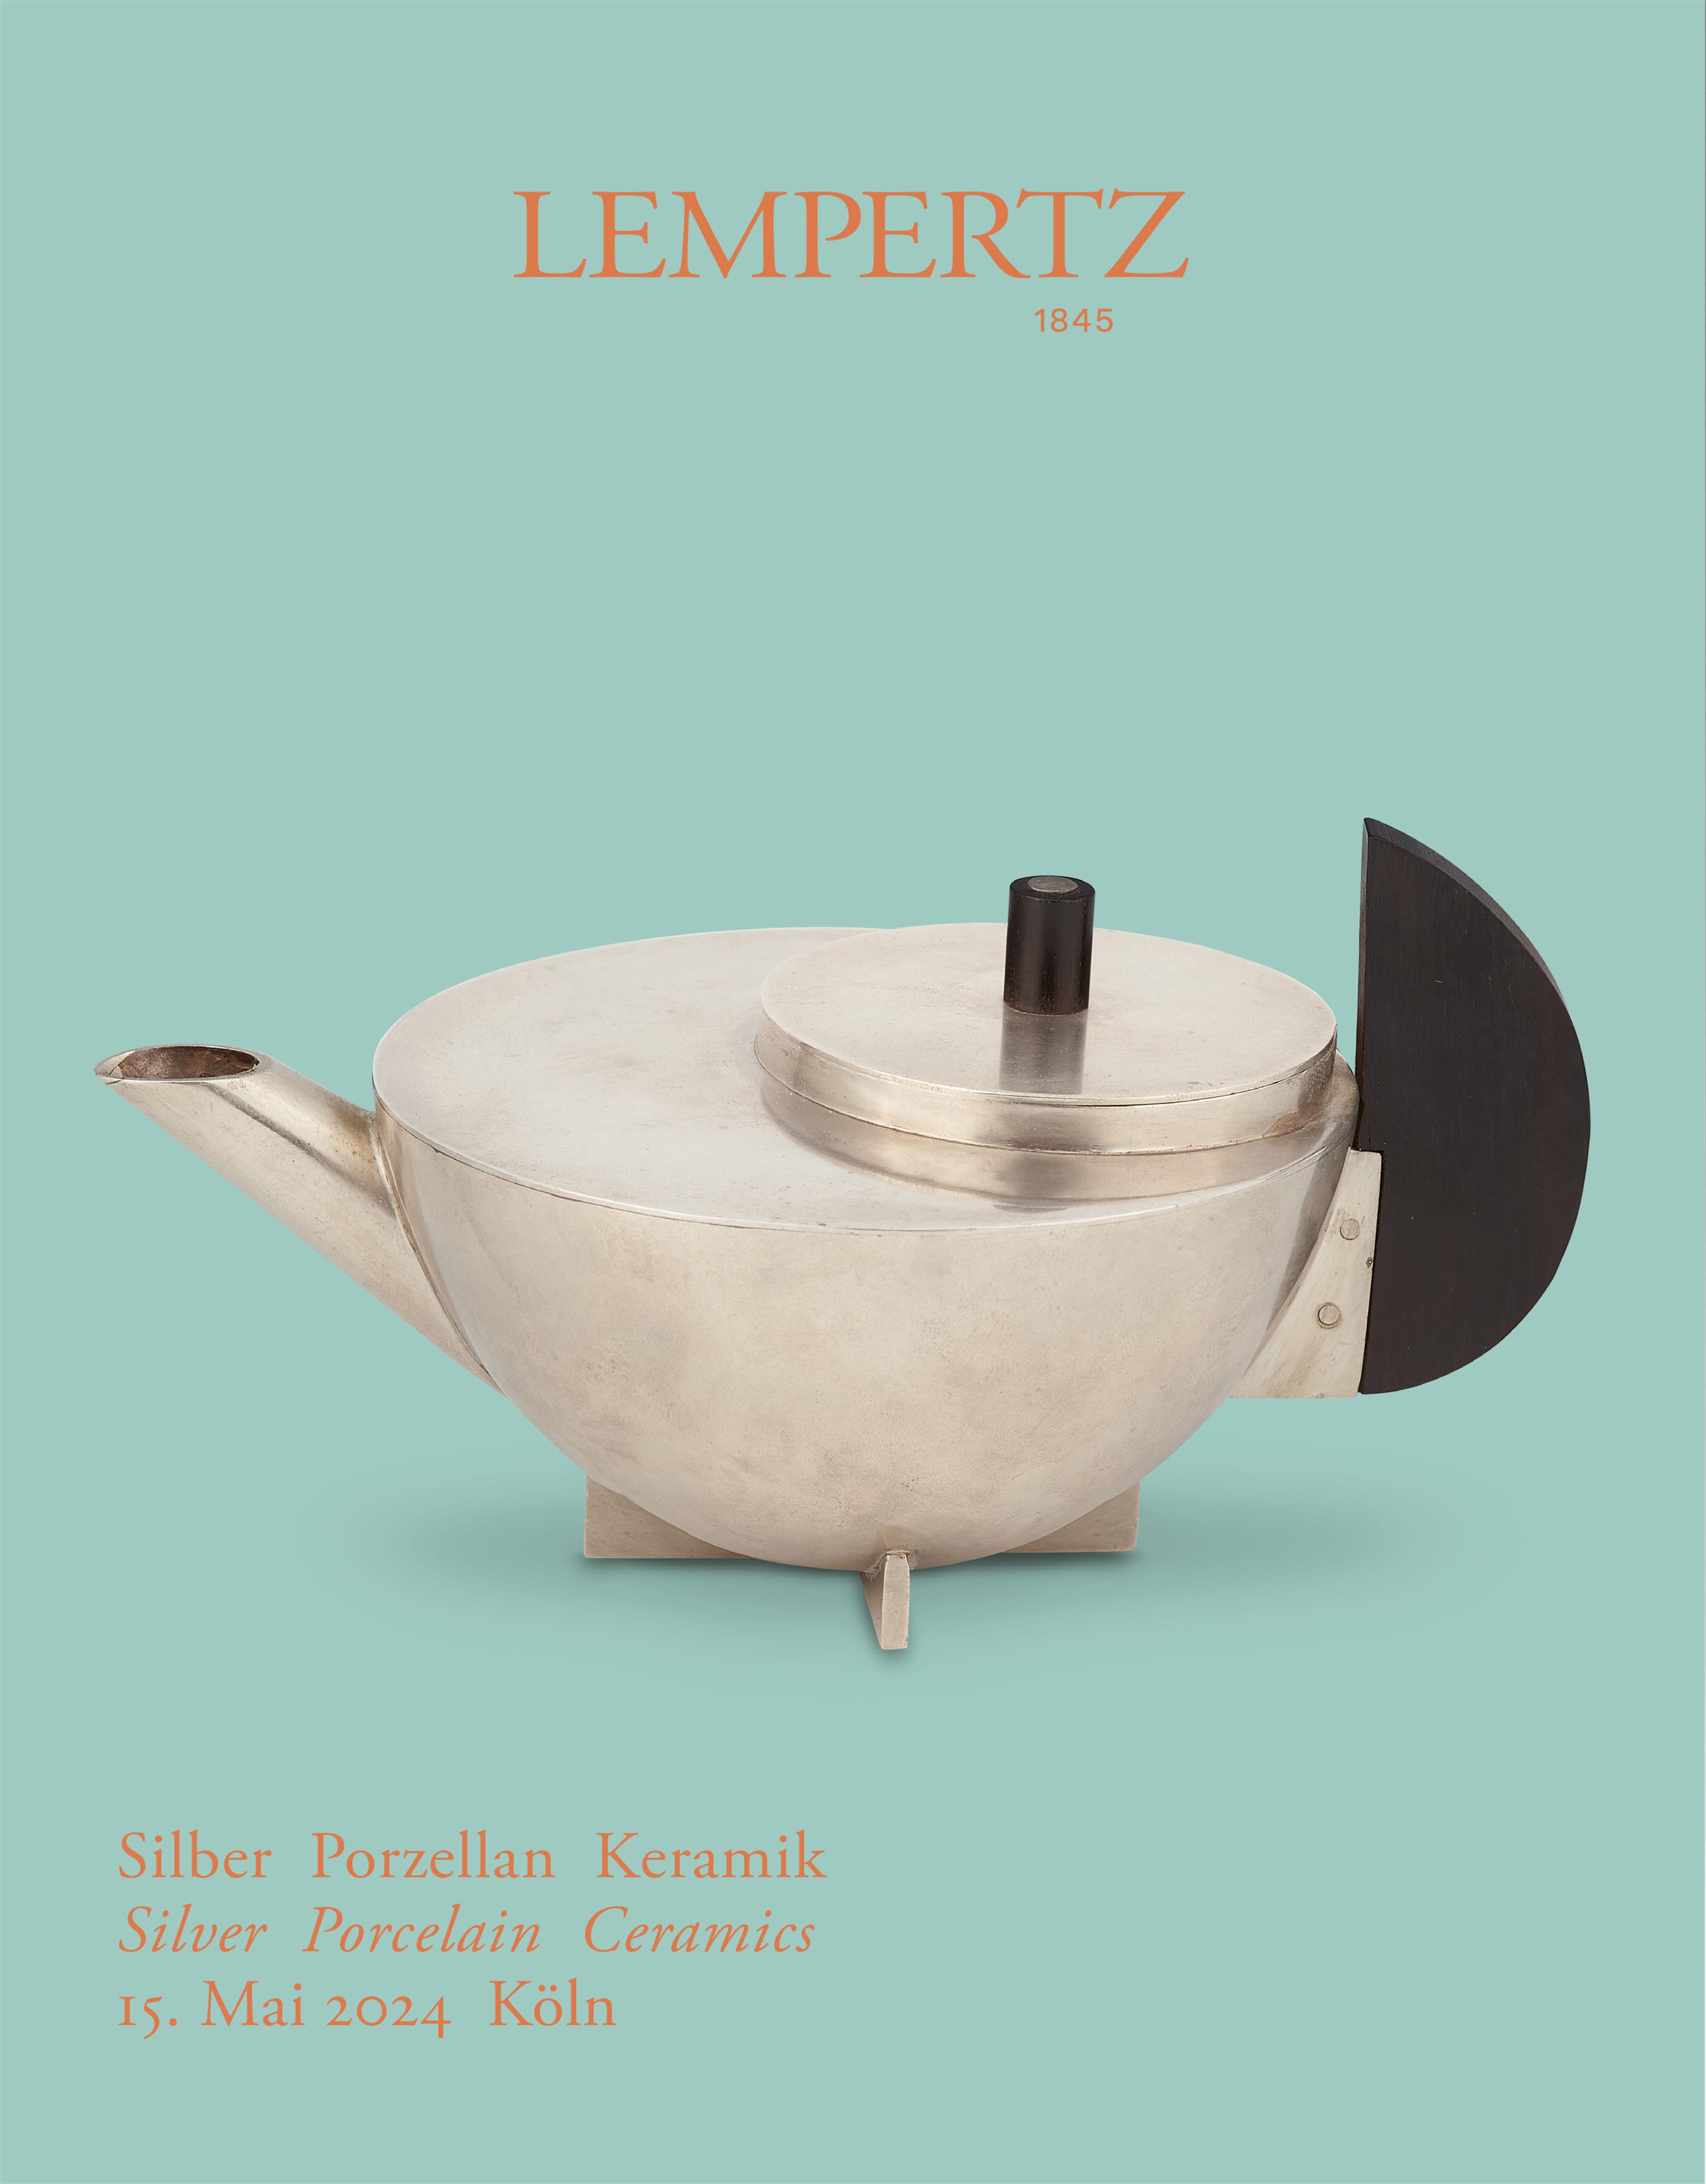 Auktionskatalog - Silber Porzellan Keramik - Online Katalog - Auktion 1244 – Ersteigern Sie hochwertige Kunst in der nächsten Lempertz-Auktion!